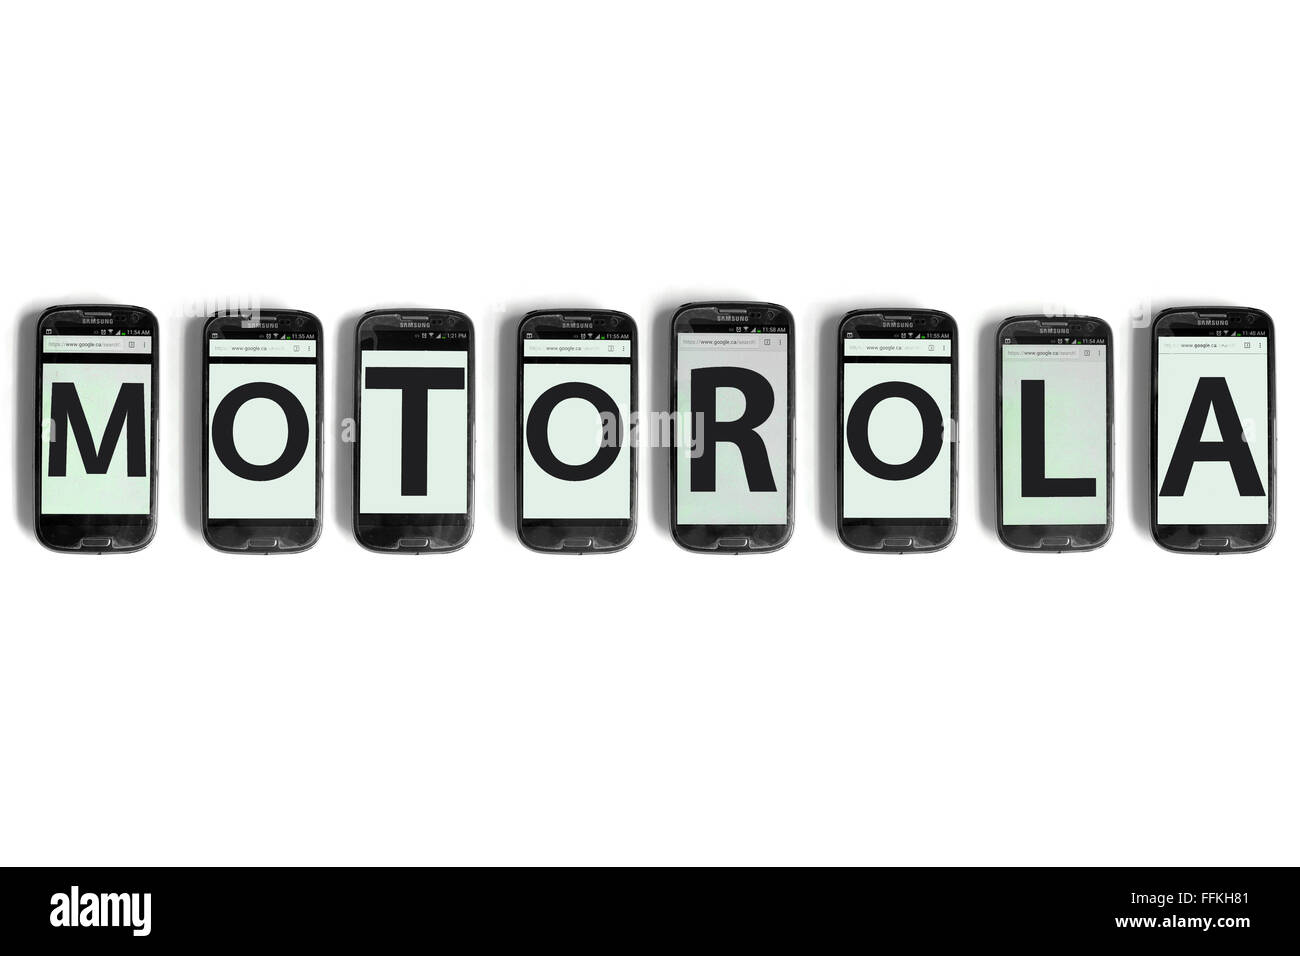 Motorola scritto su schermate dello smartphone fotografati contro uno sfondo bianco. Foto Stock